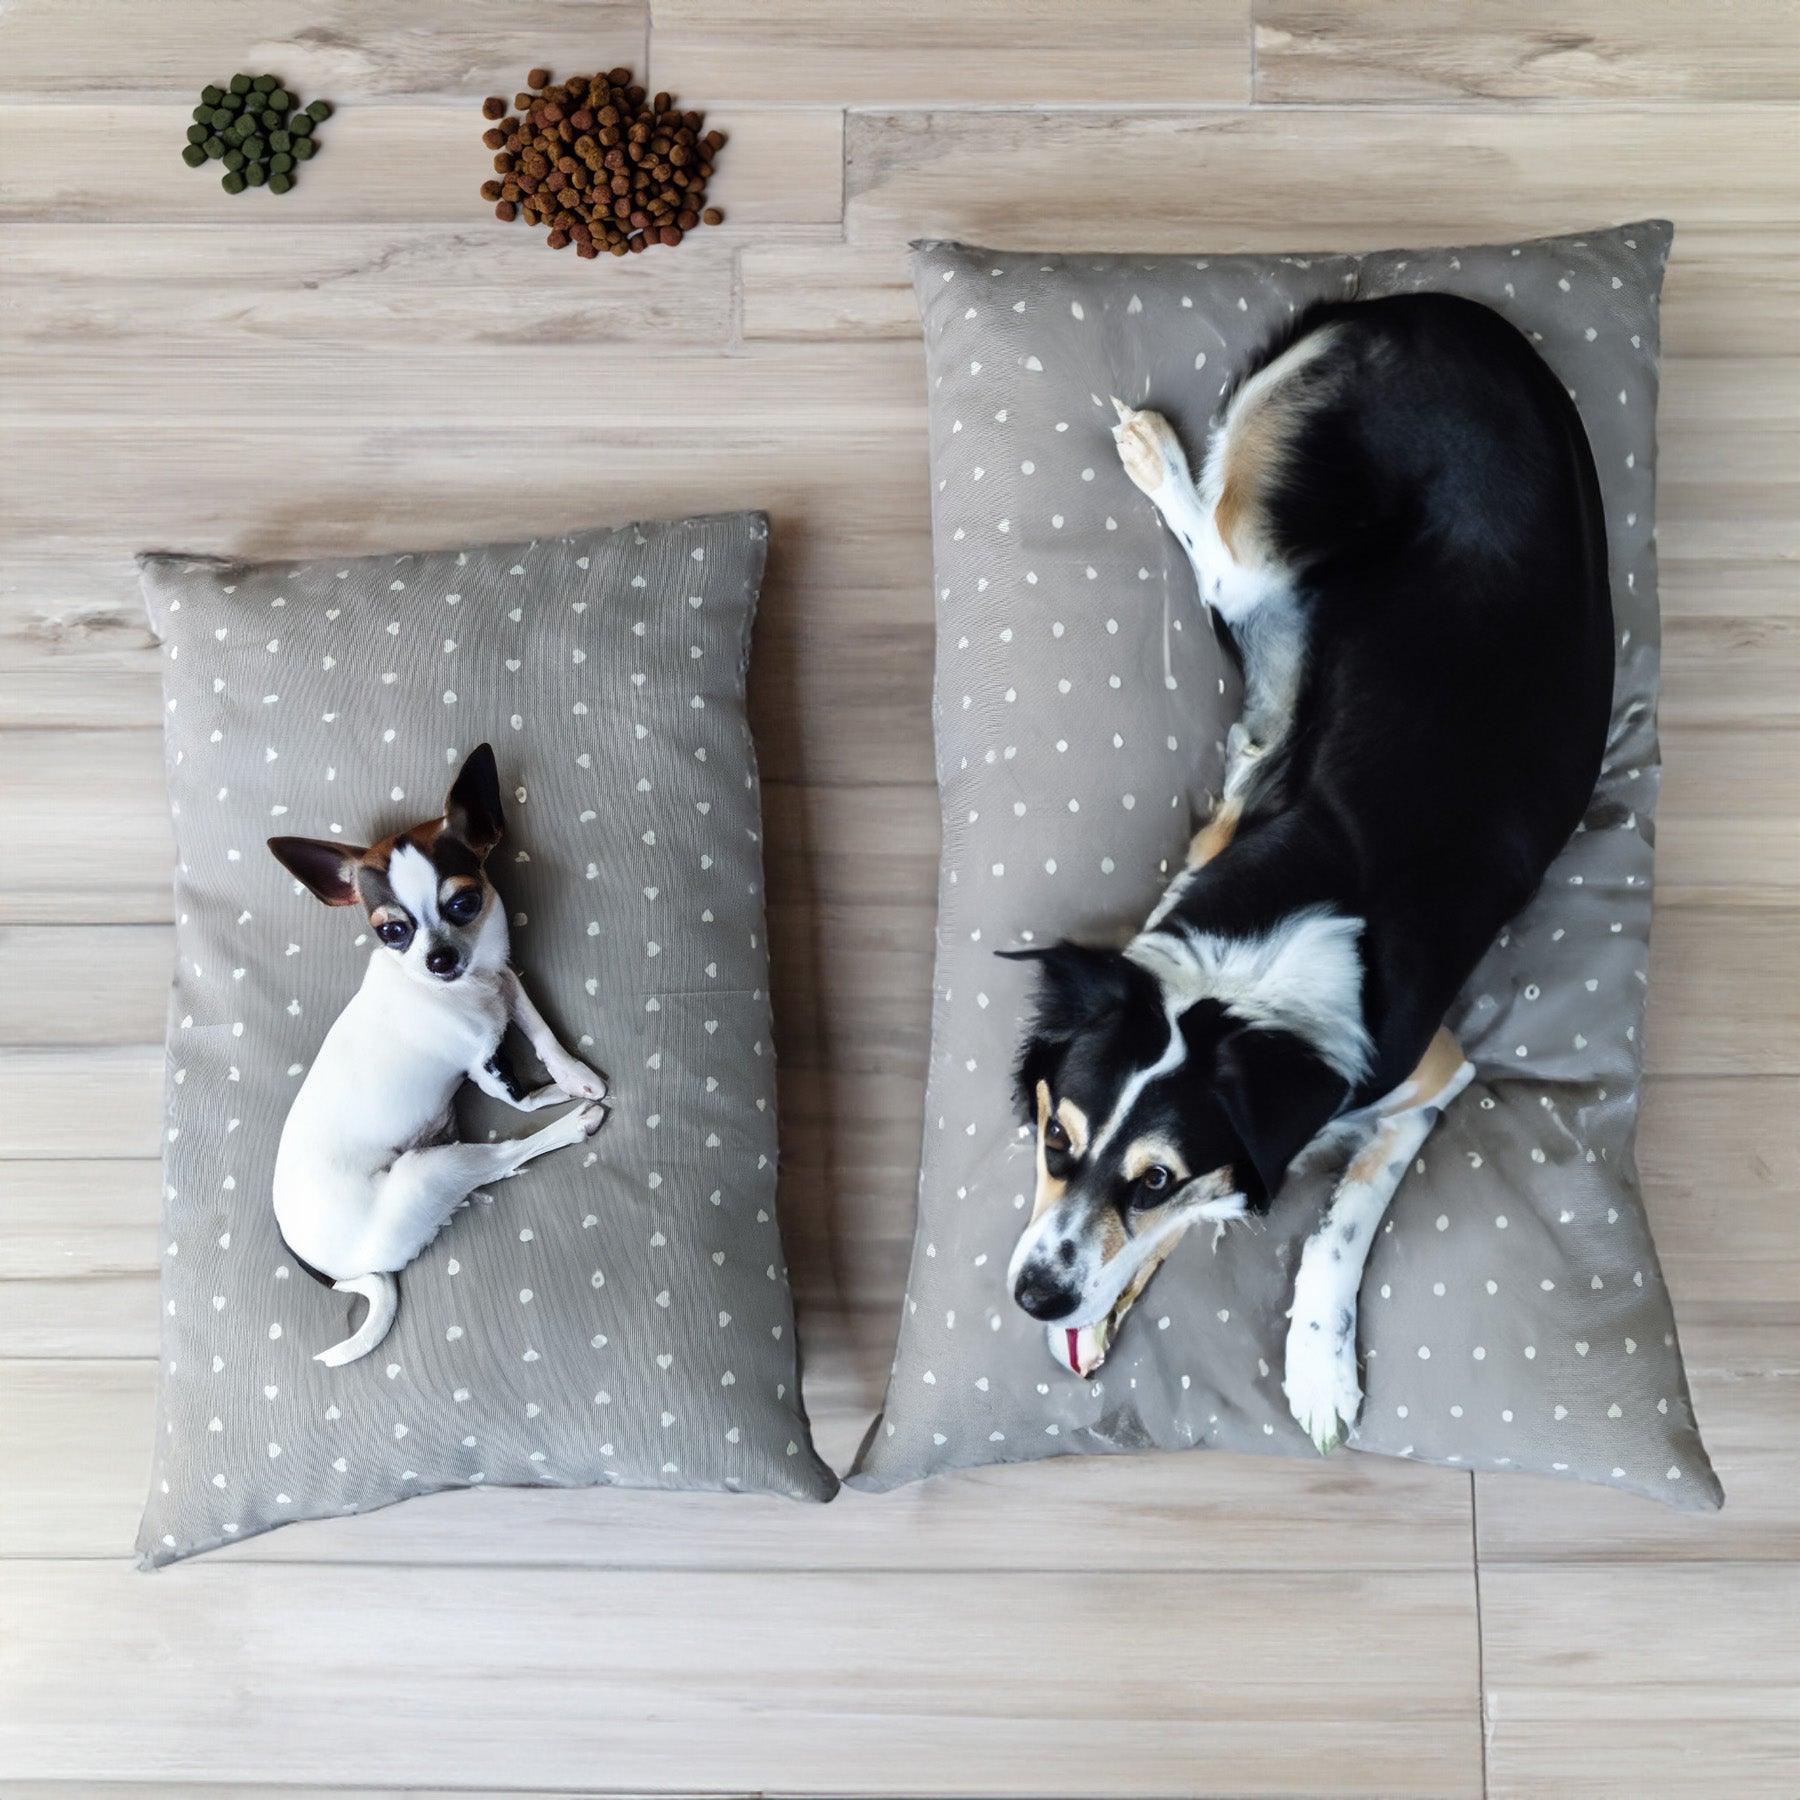 Cuscino PIPPO per cani e gatti antigraffio e lavabile - Comfort e durata per i tuoi amici pelosi su Beliamo.com